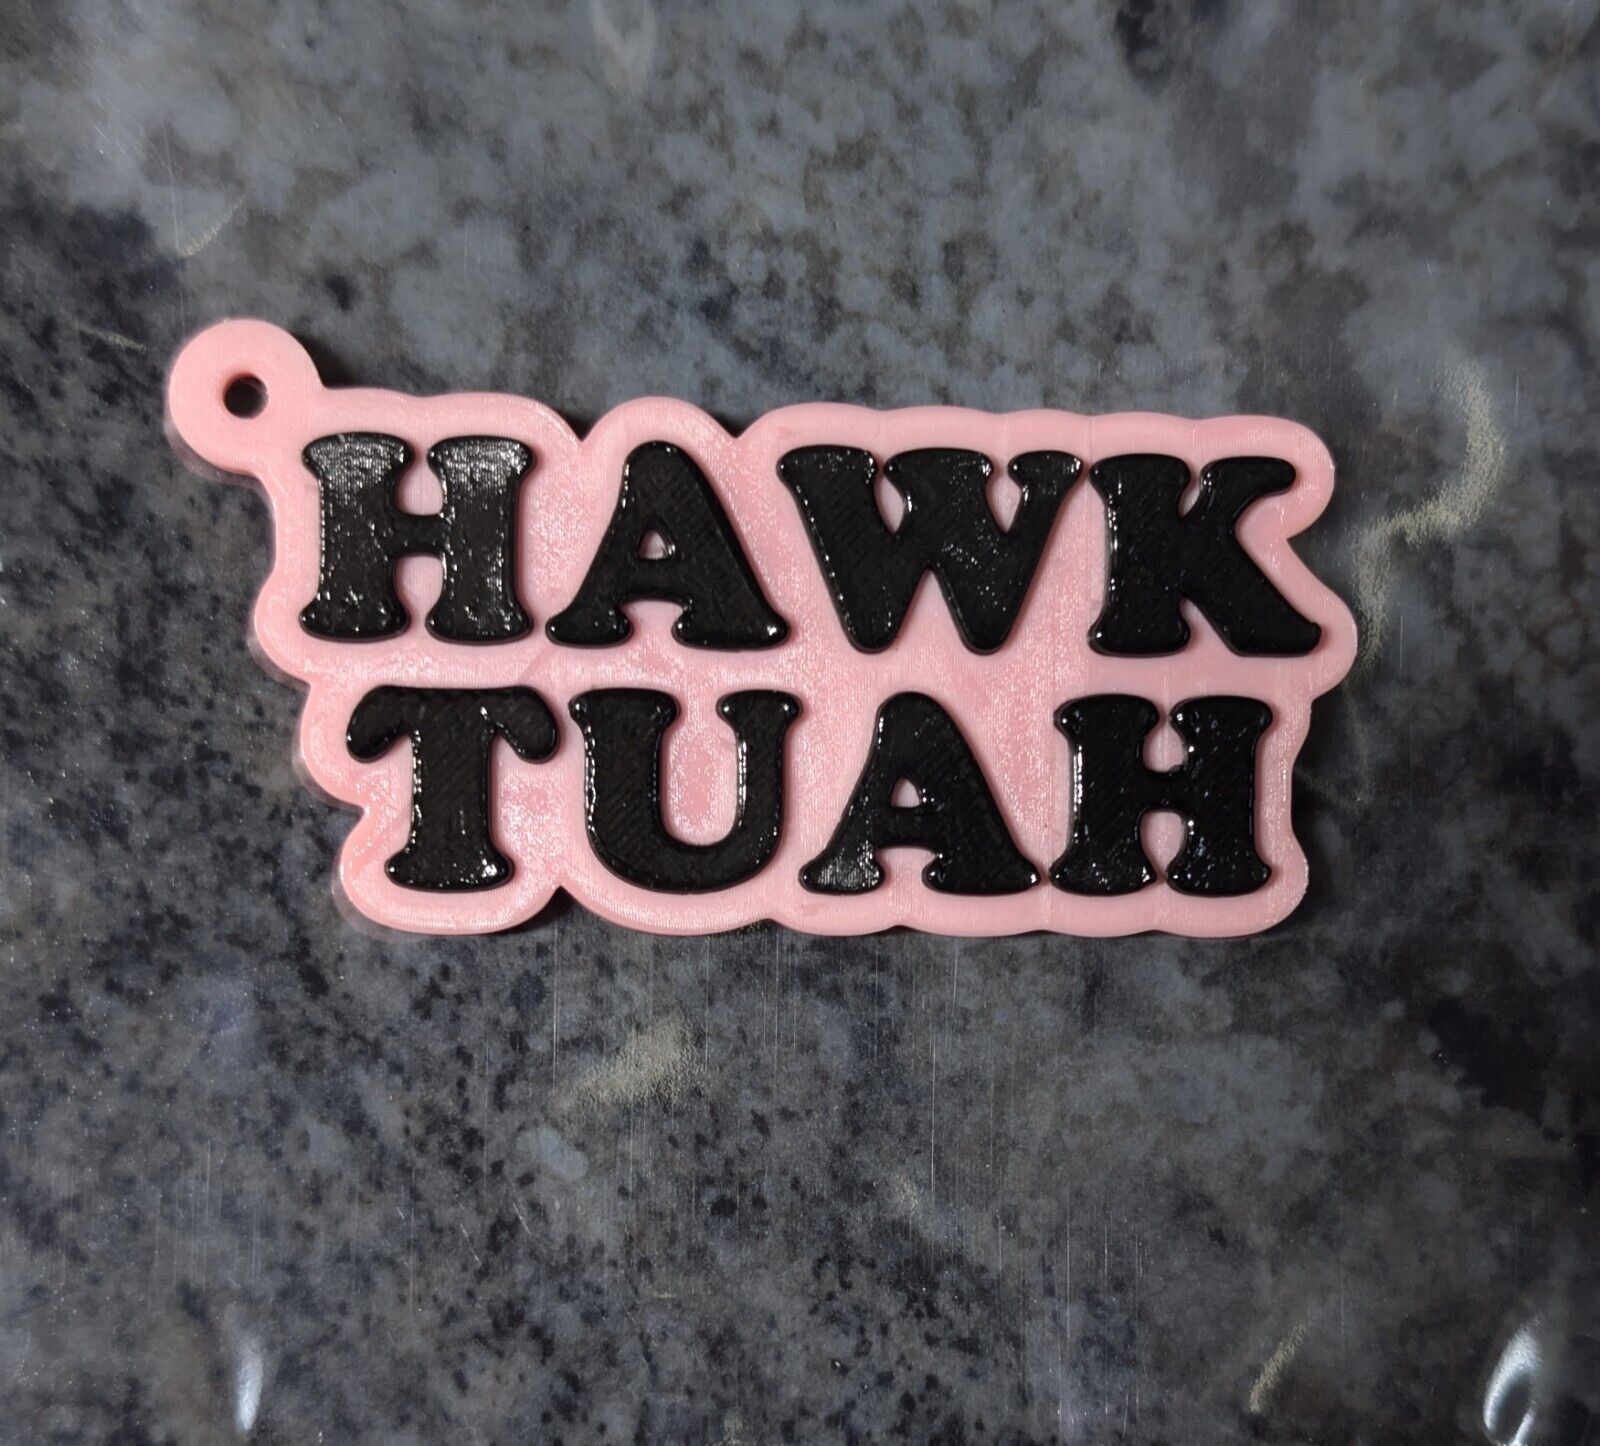 Hawk tuah keychain 3d printed